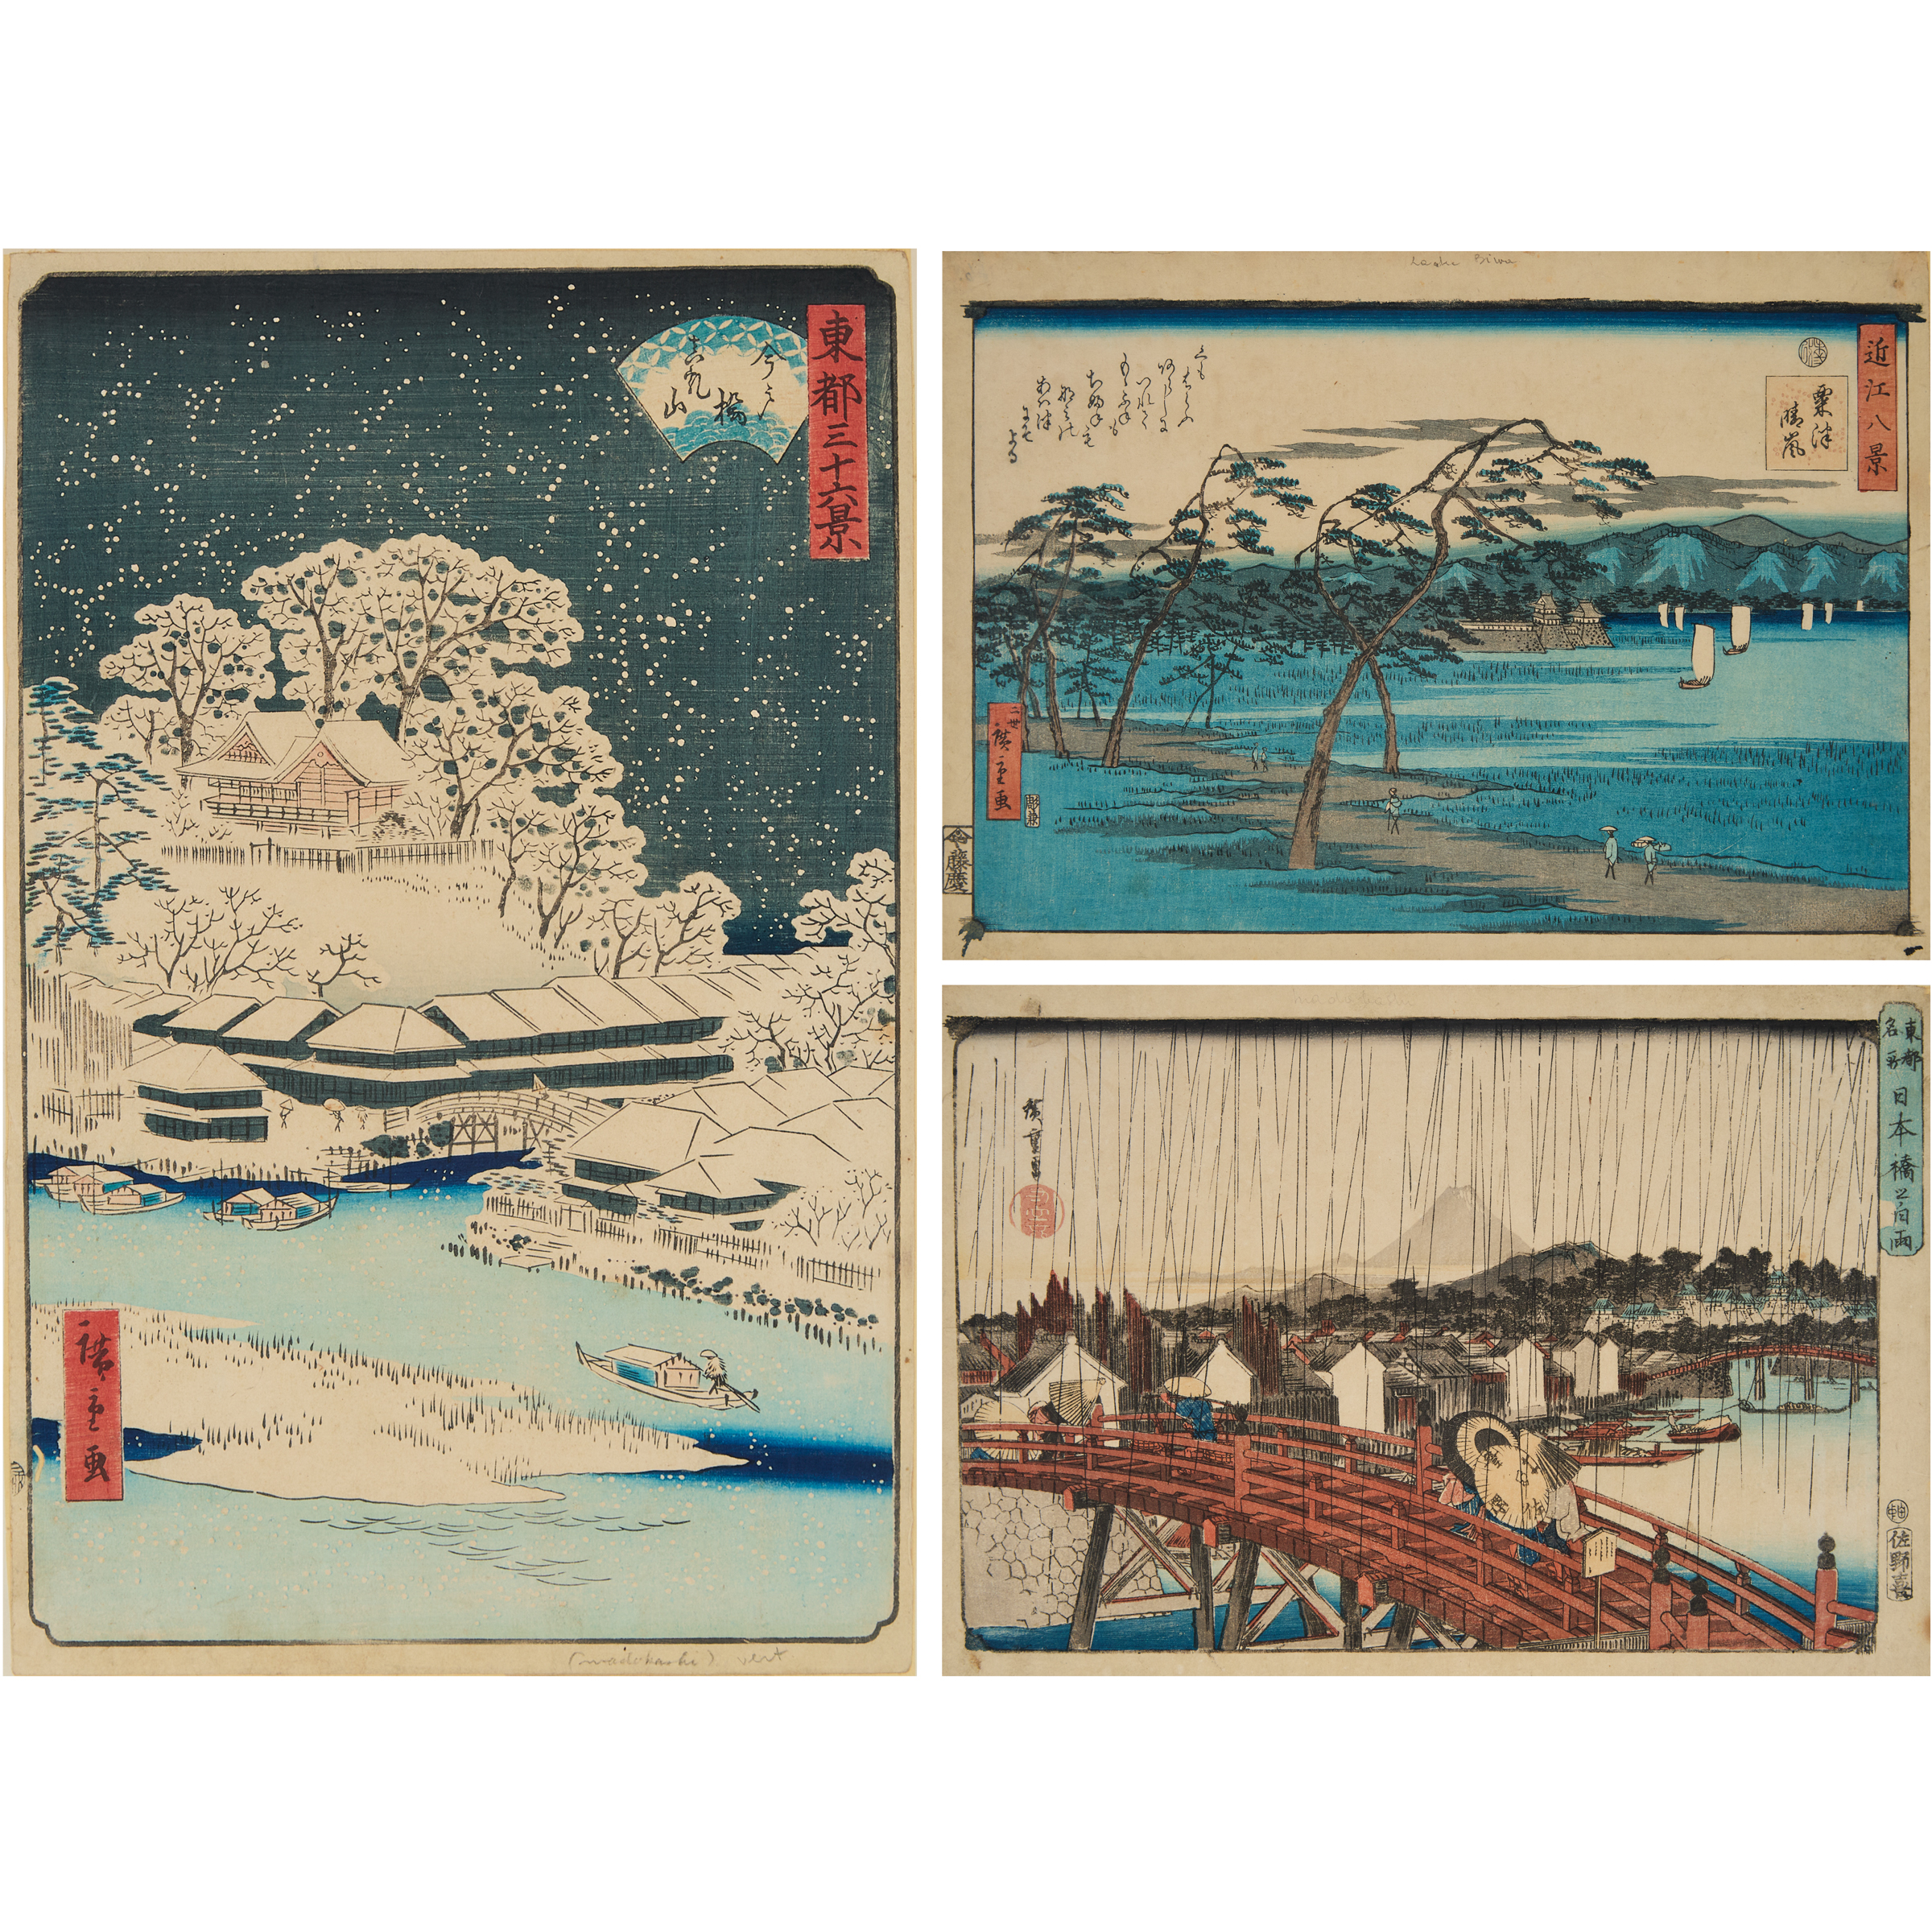 Utagawa Hiroshige (1797-1856) and